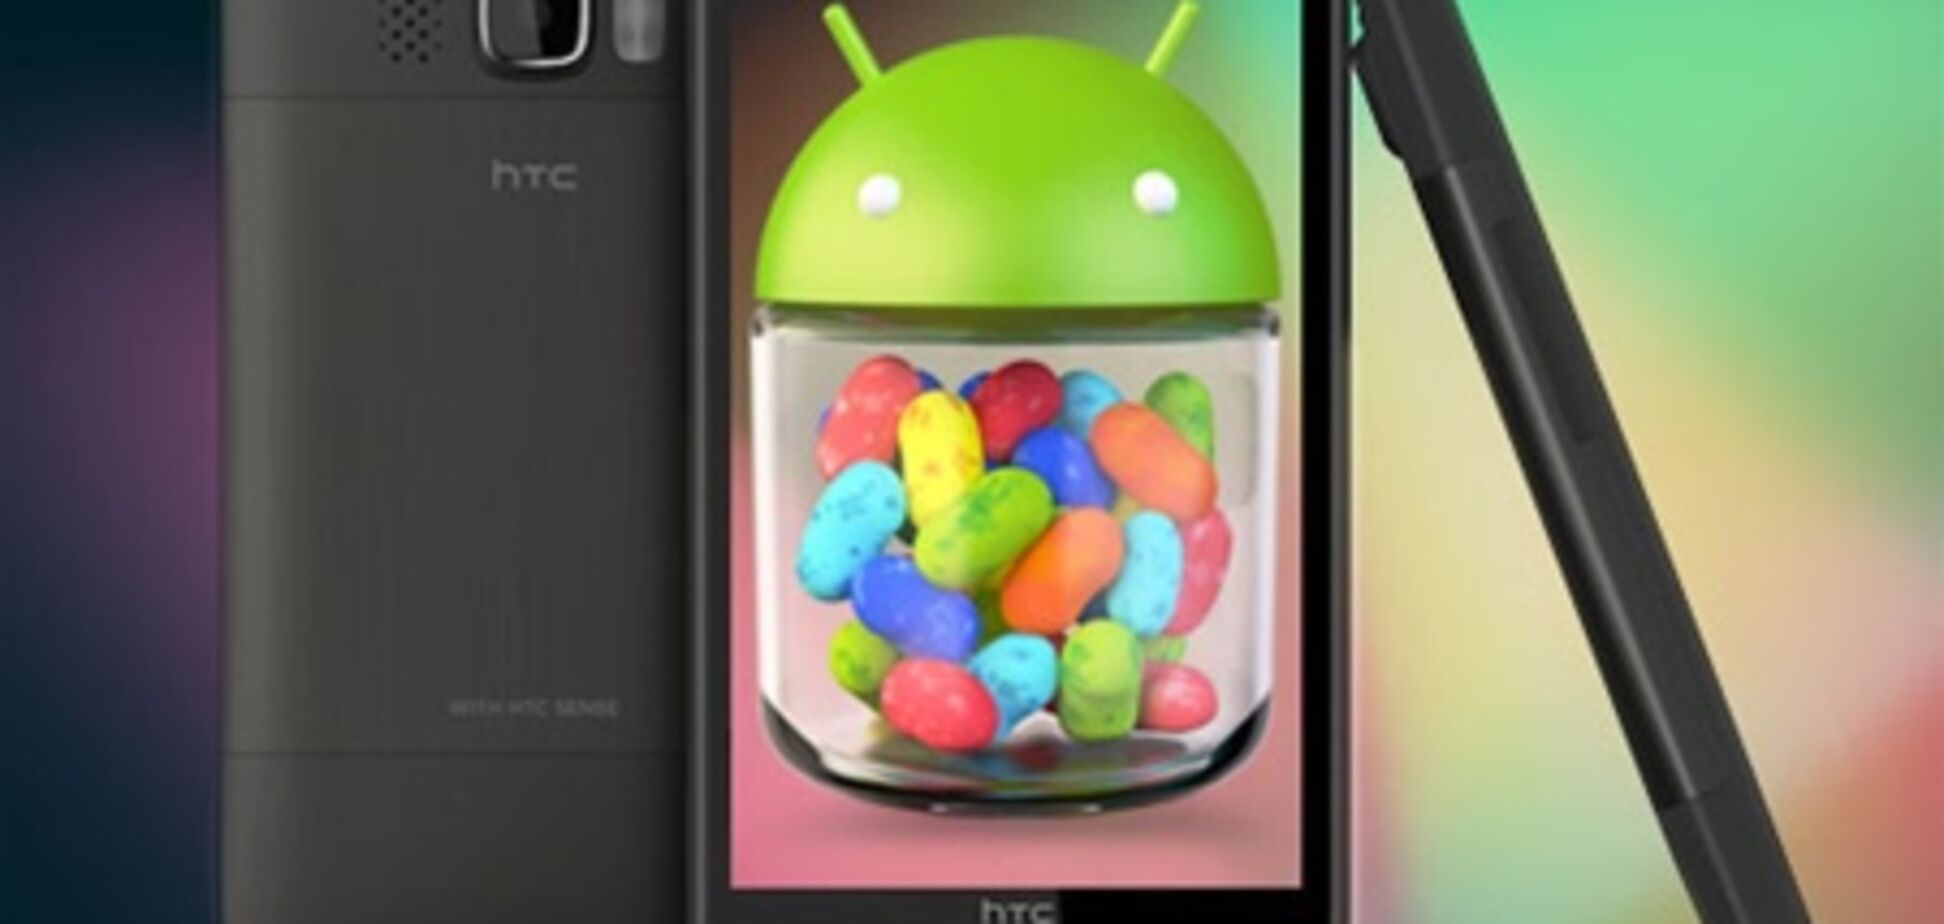 Новая прошивка Android 4.1 делает из HTC HD2 неумирающий смартфон  